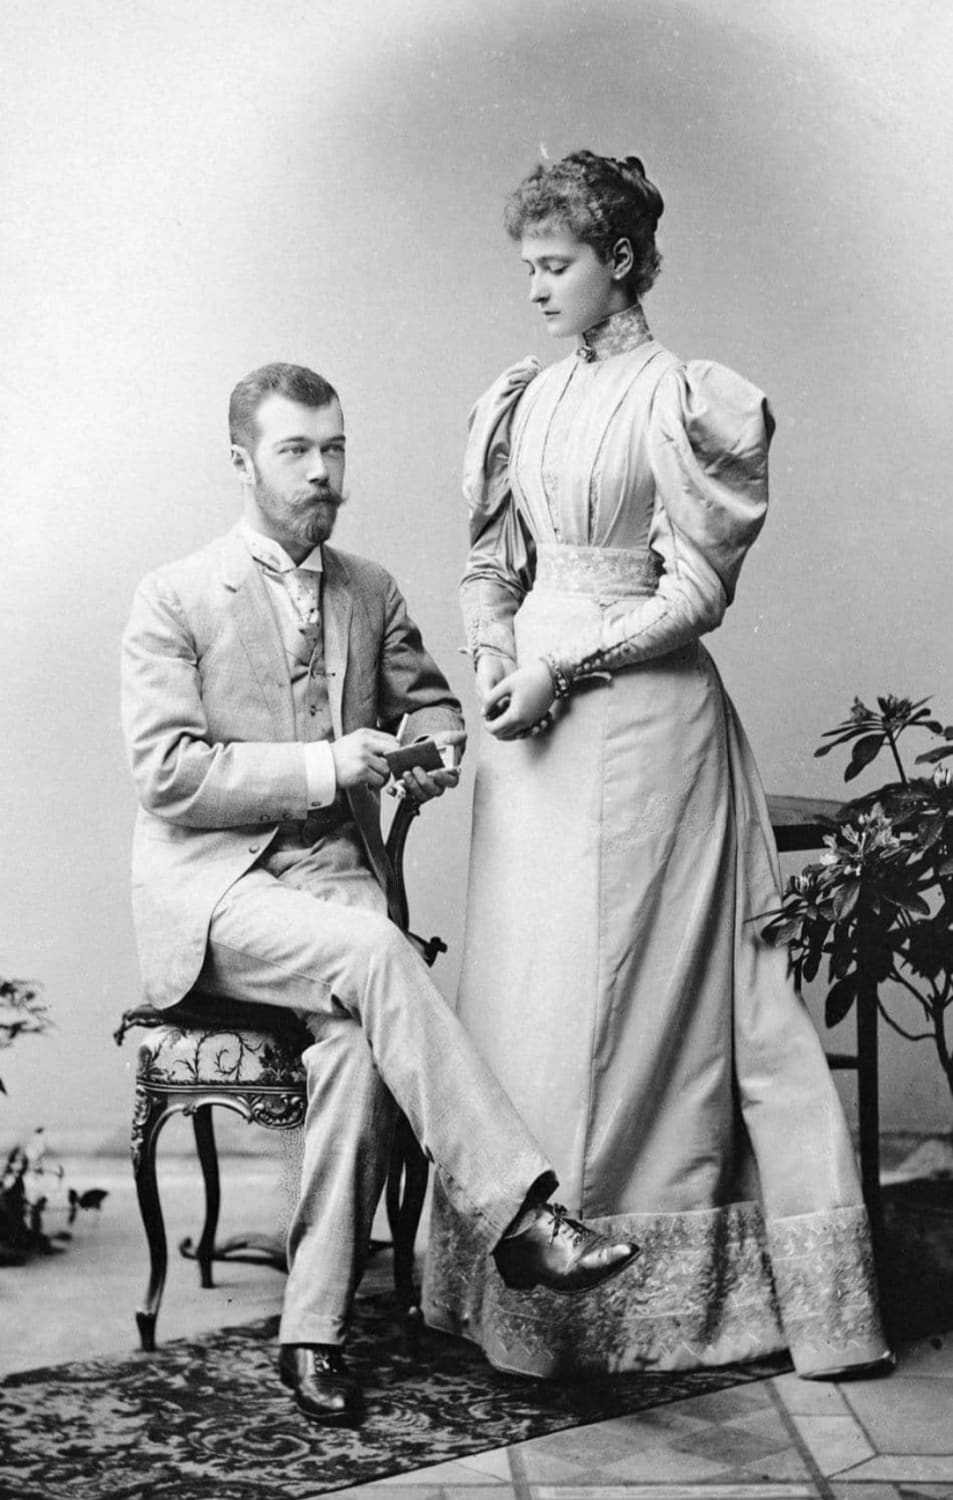 Portrait of Czar Nicholas II and his bride, The Czarina Alexandra Feodorovna taken in 1894.